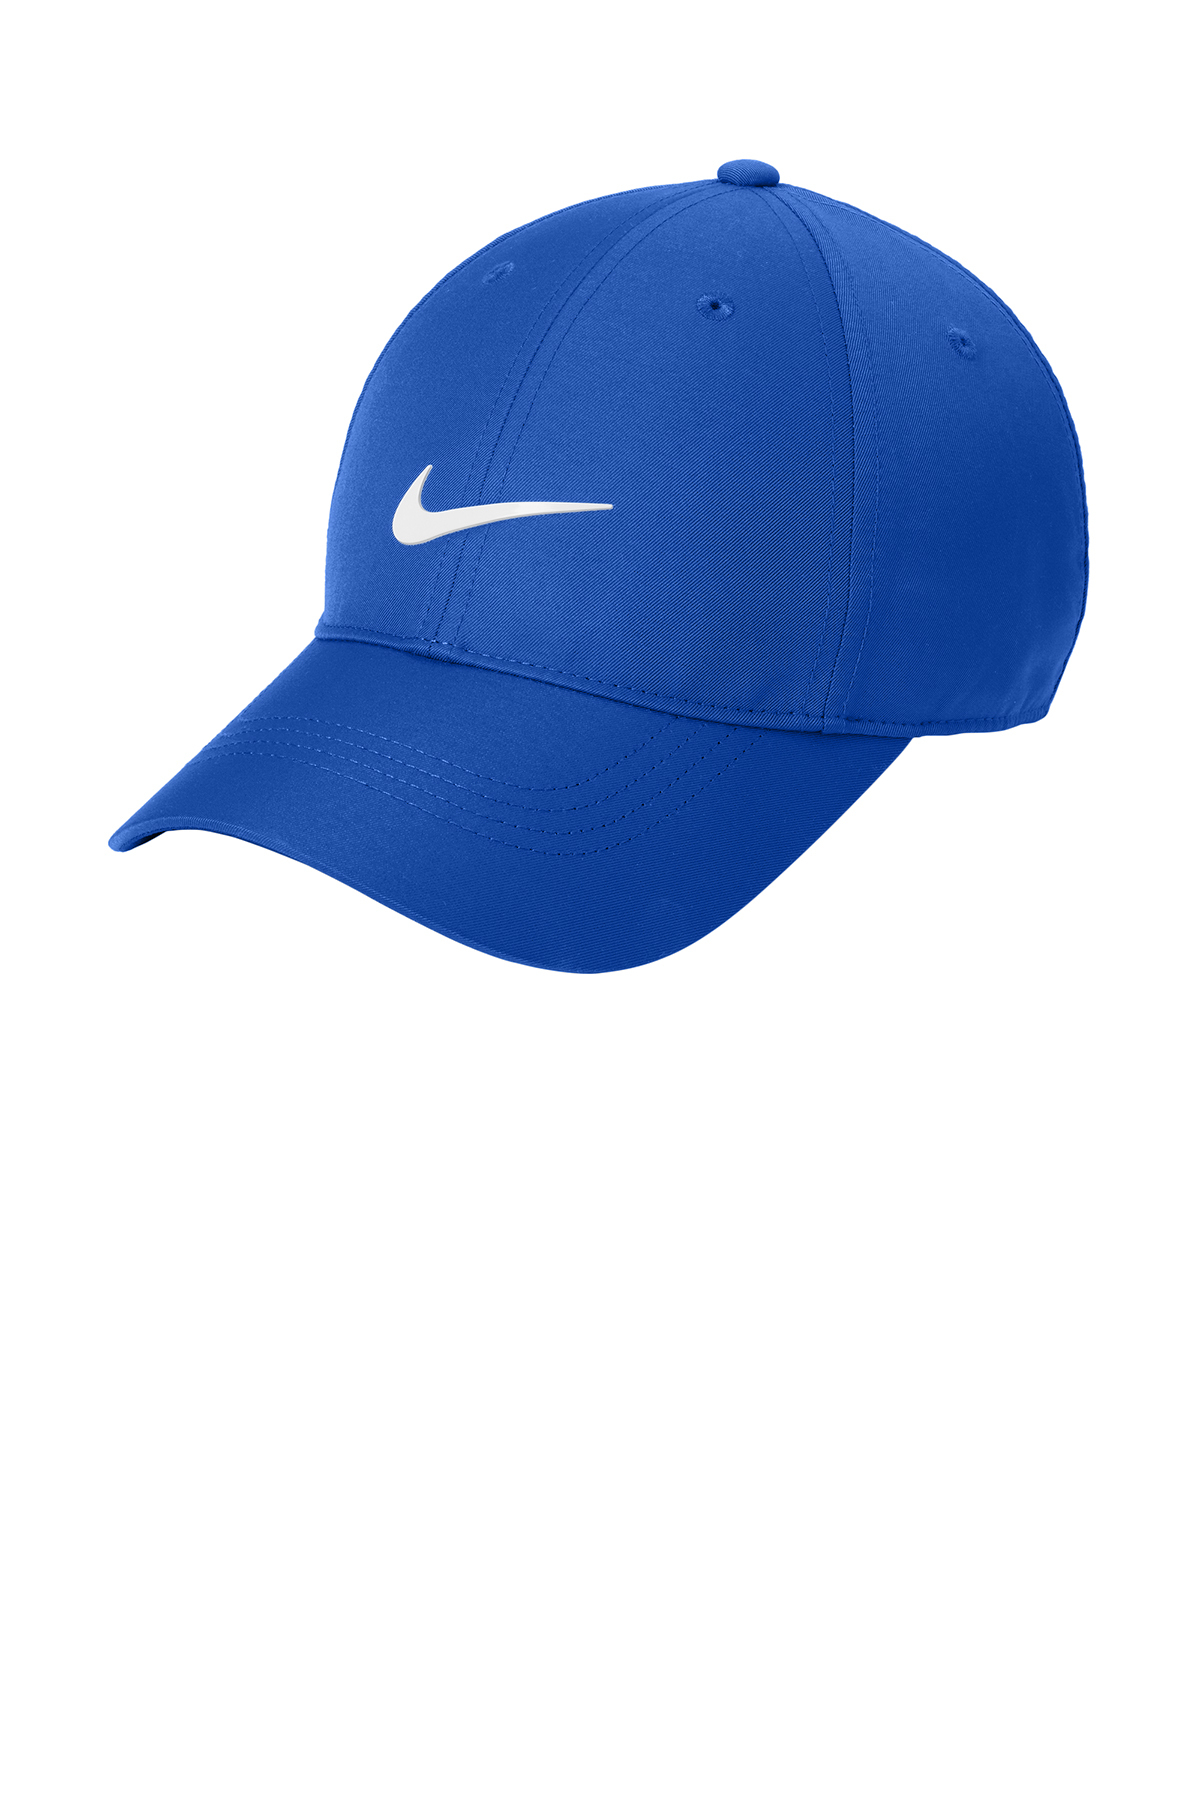 Nike Dri-FIT Swoosh Front Cap | Product | SanMar